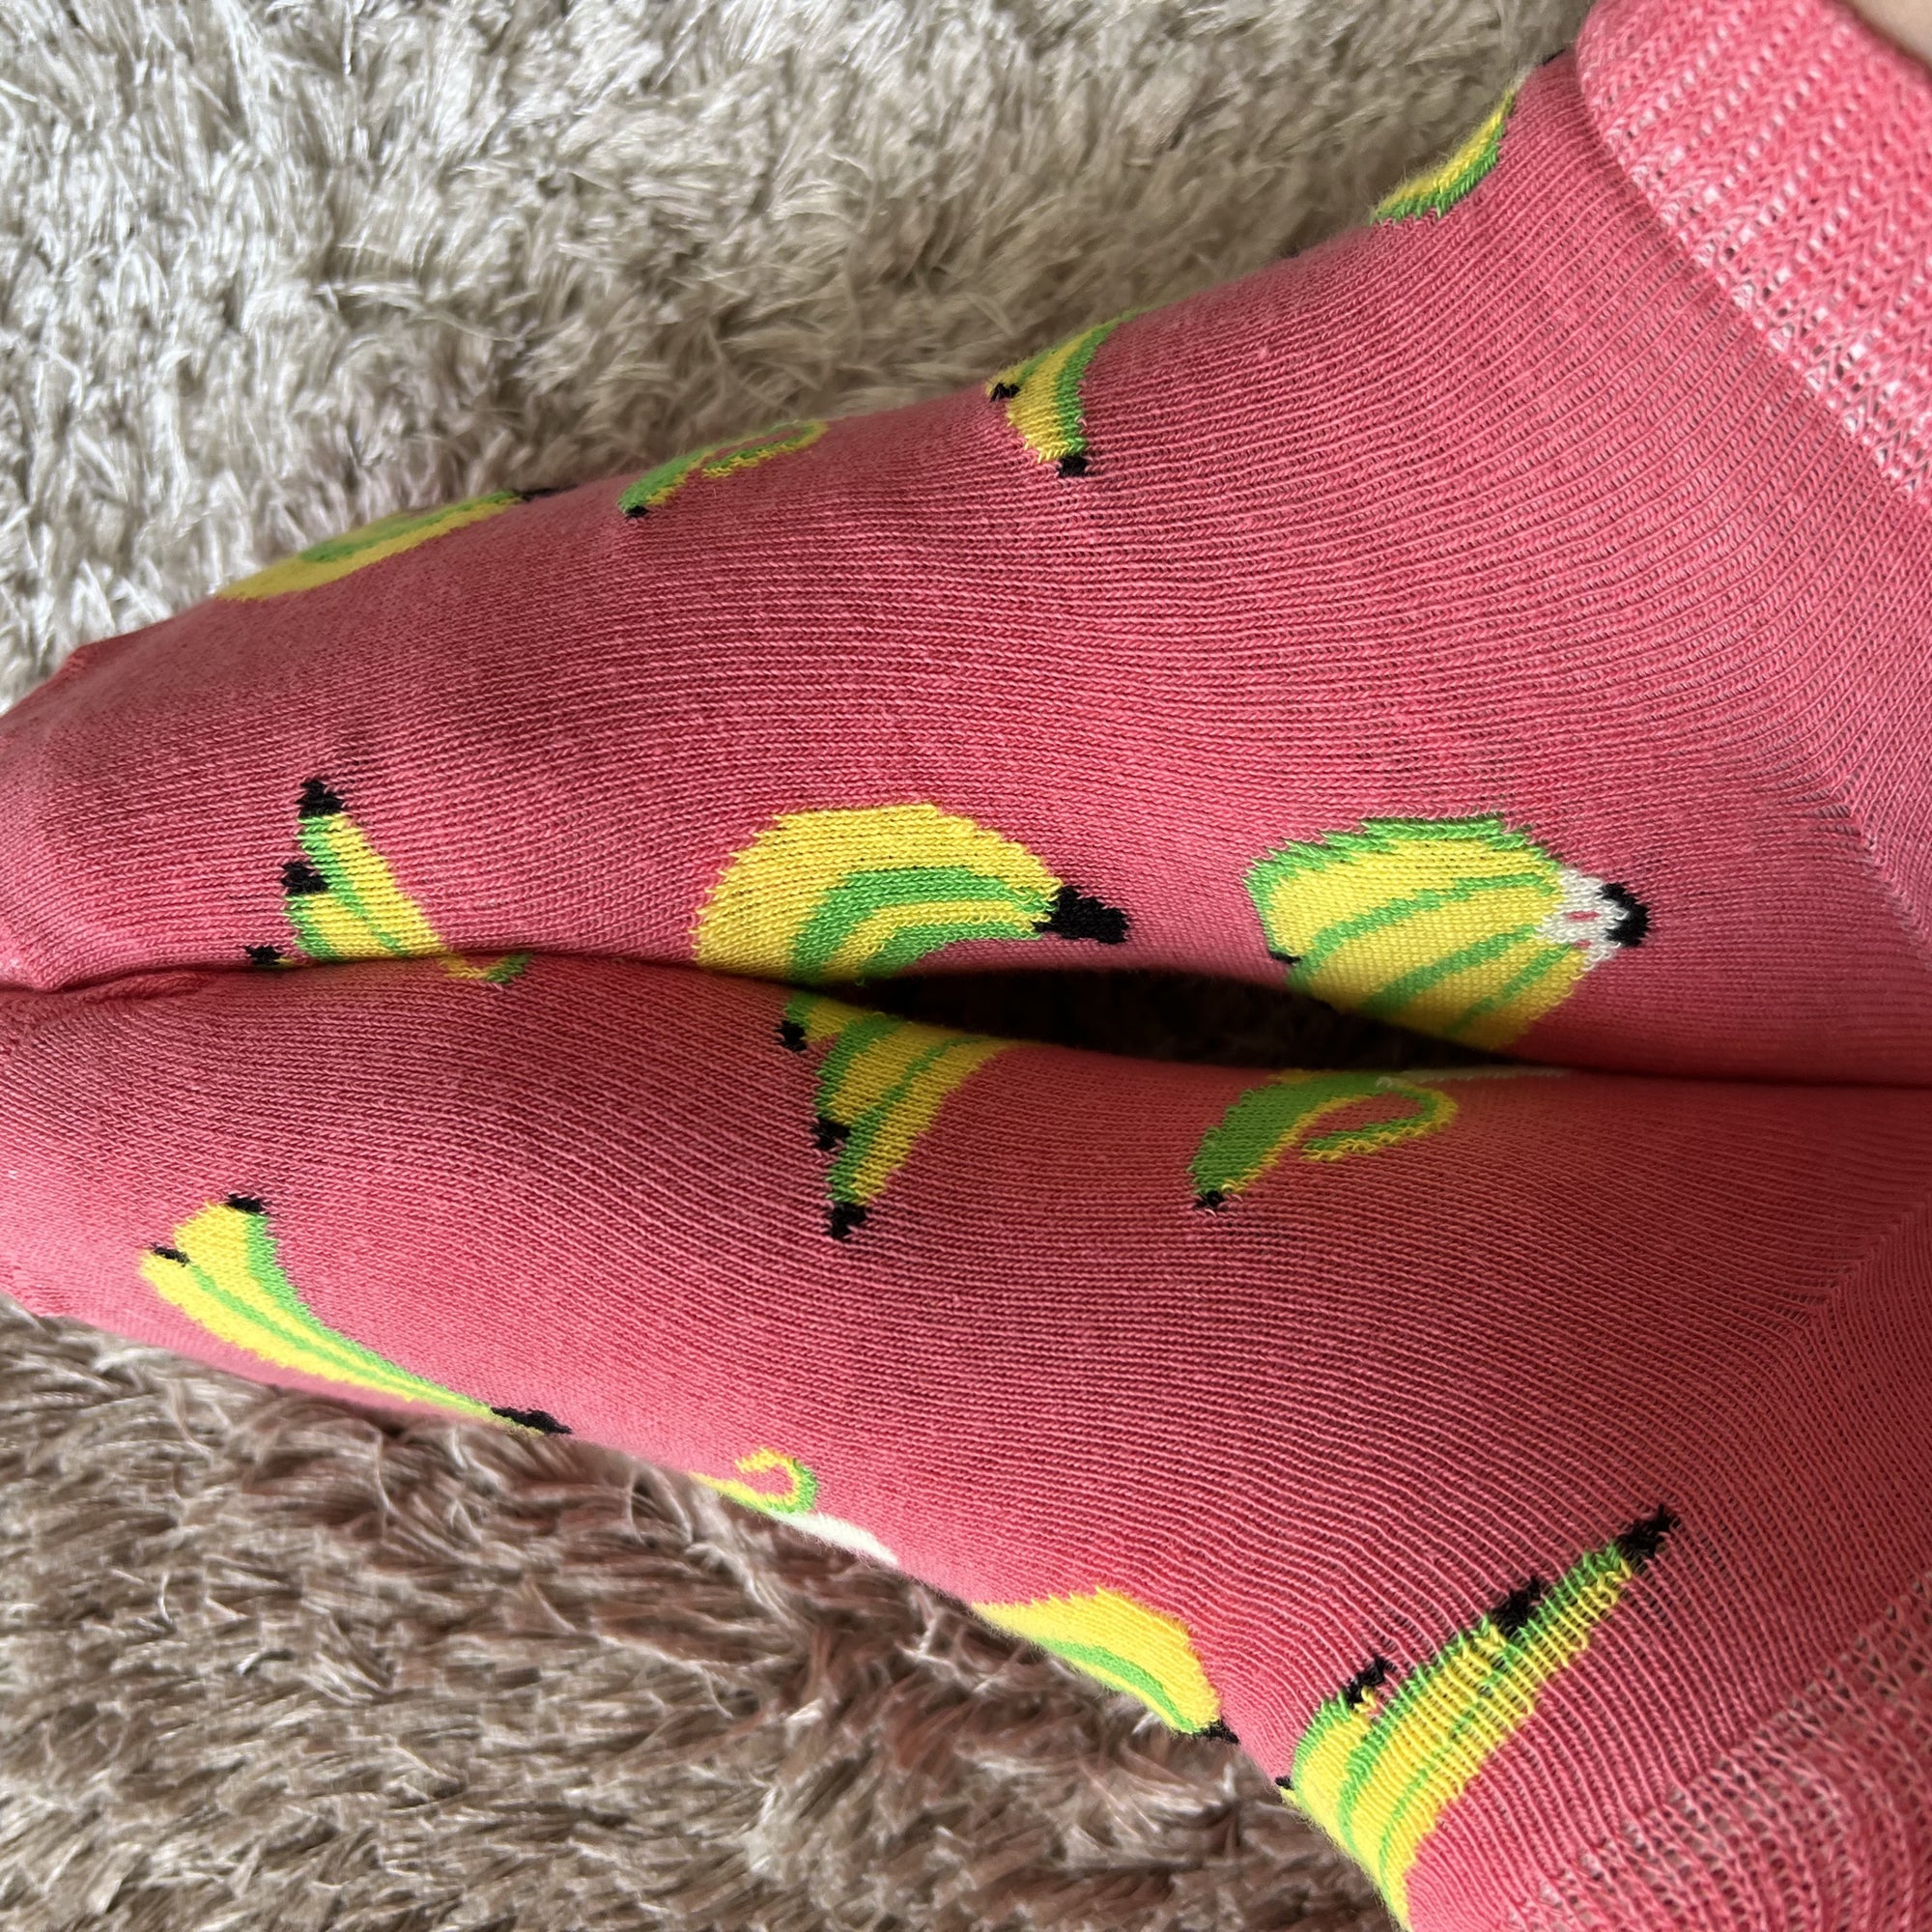 Louluu Bananas Low Cut Socks